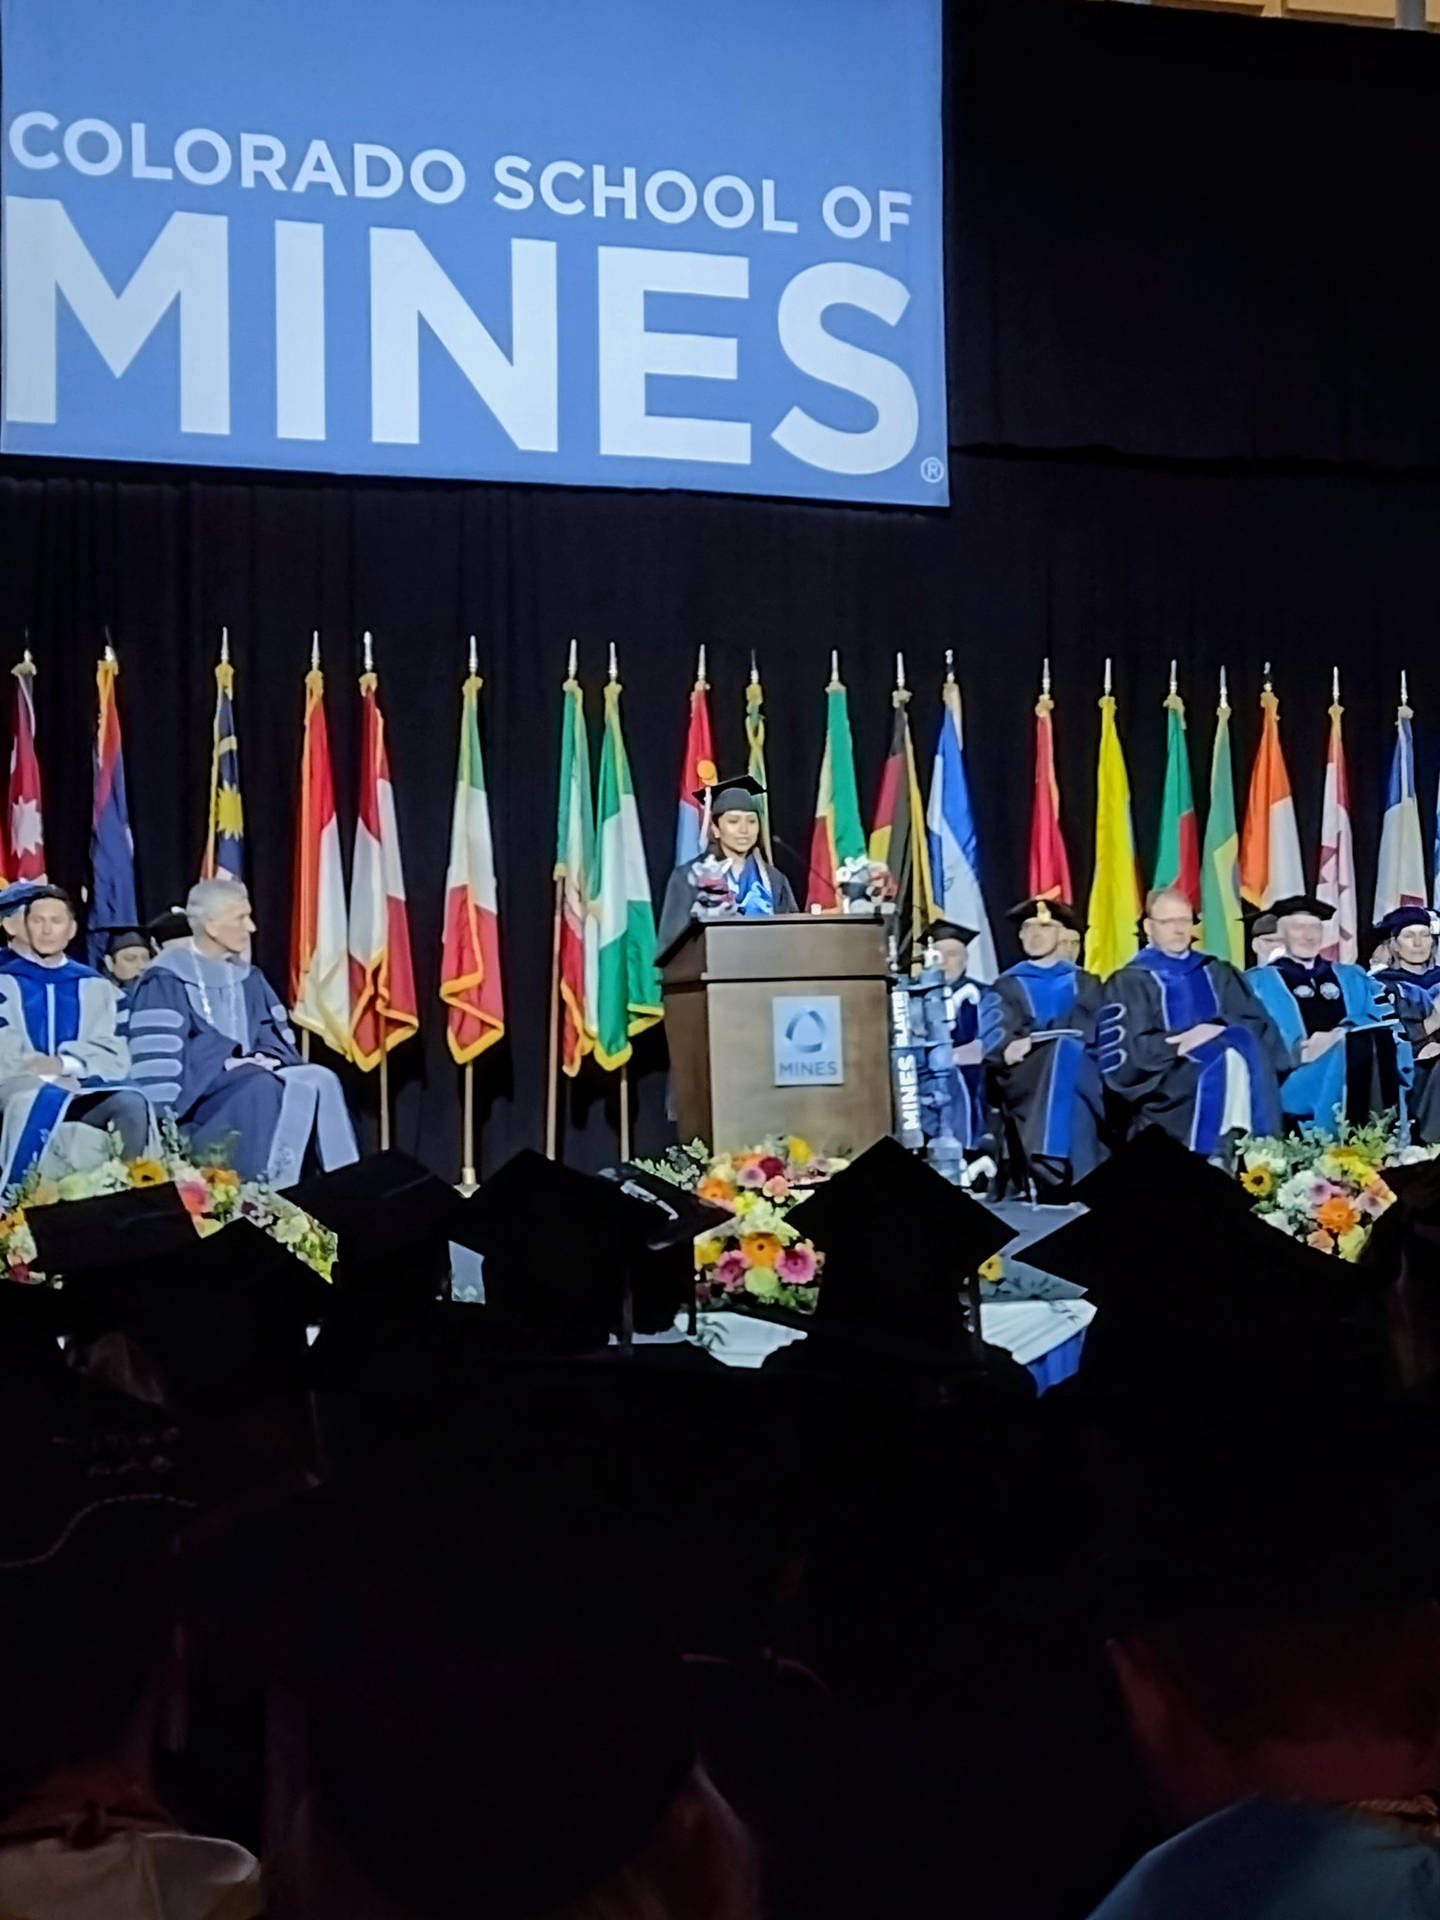 Discursode Graduación De La Escuela De Minas De Colorado Fondo de pantalla